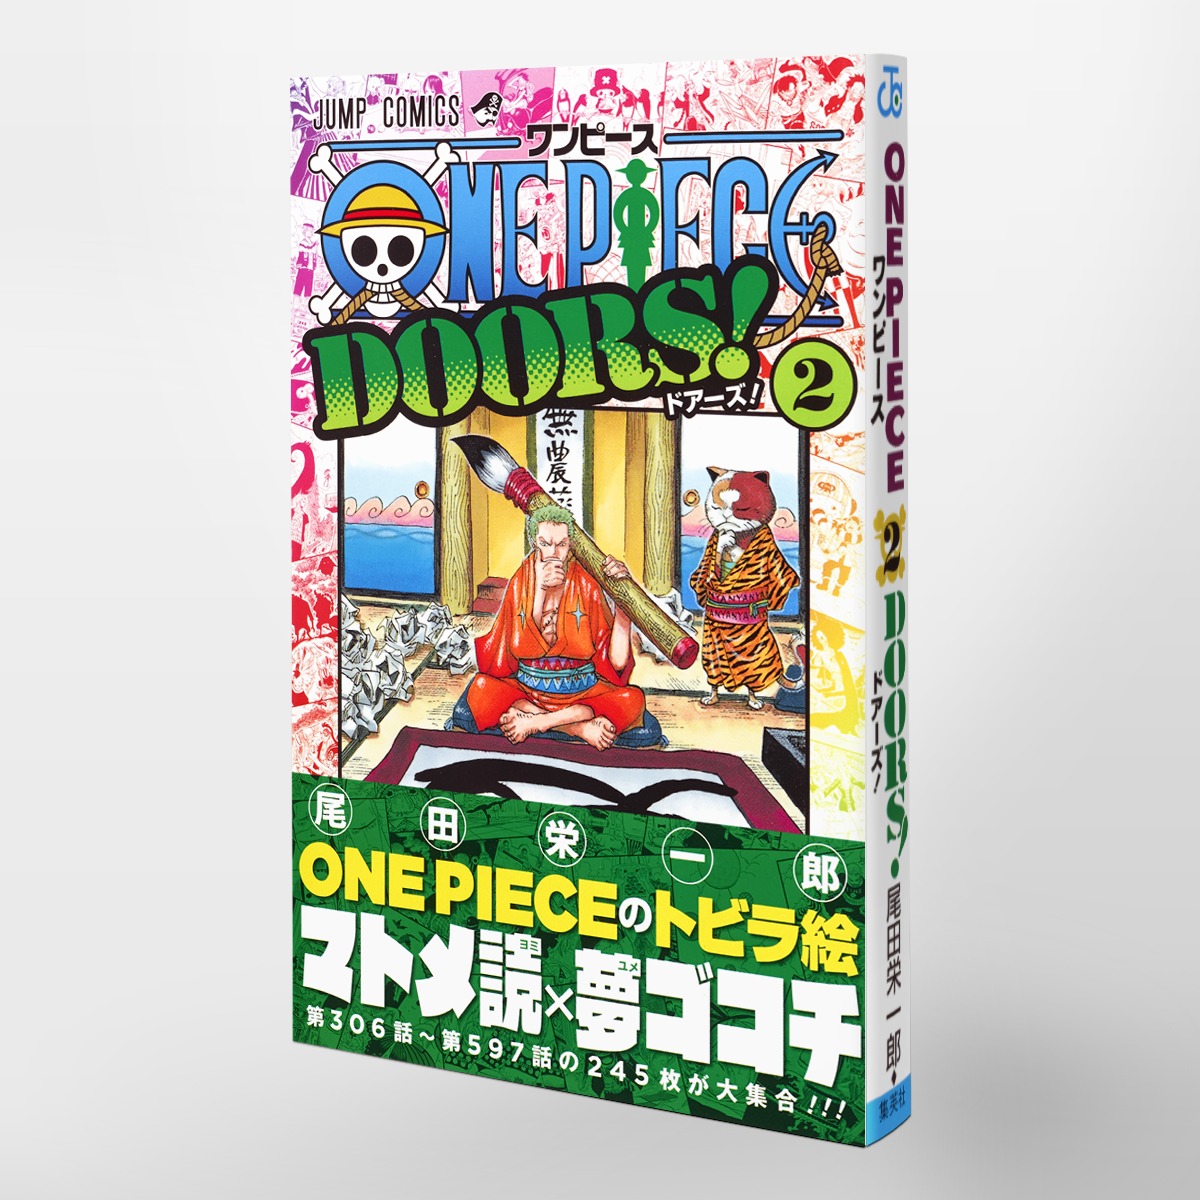 One Piece Doors 2 尾田 栄一郎 集英社の本 公式